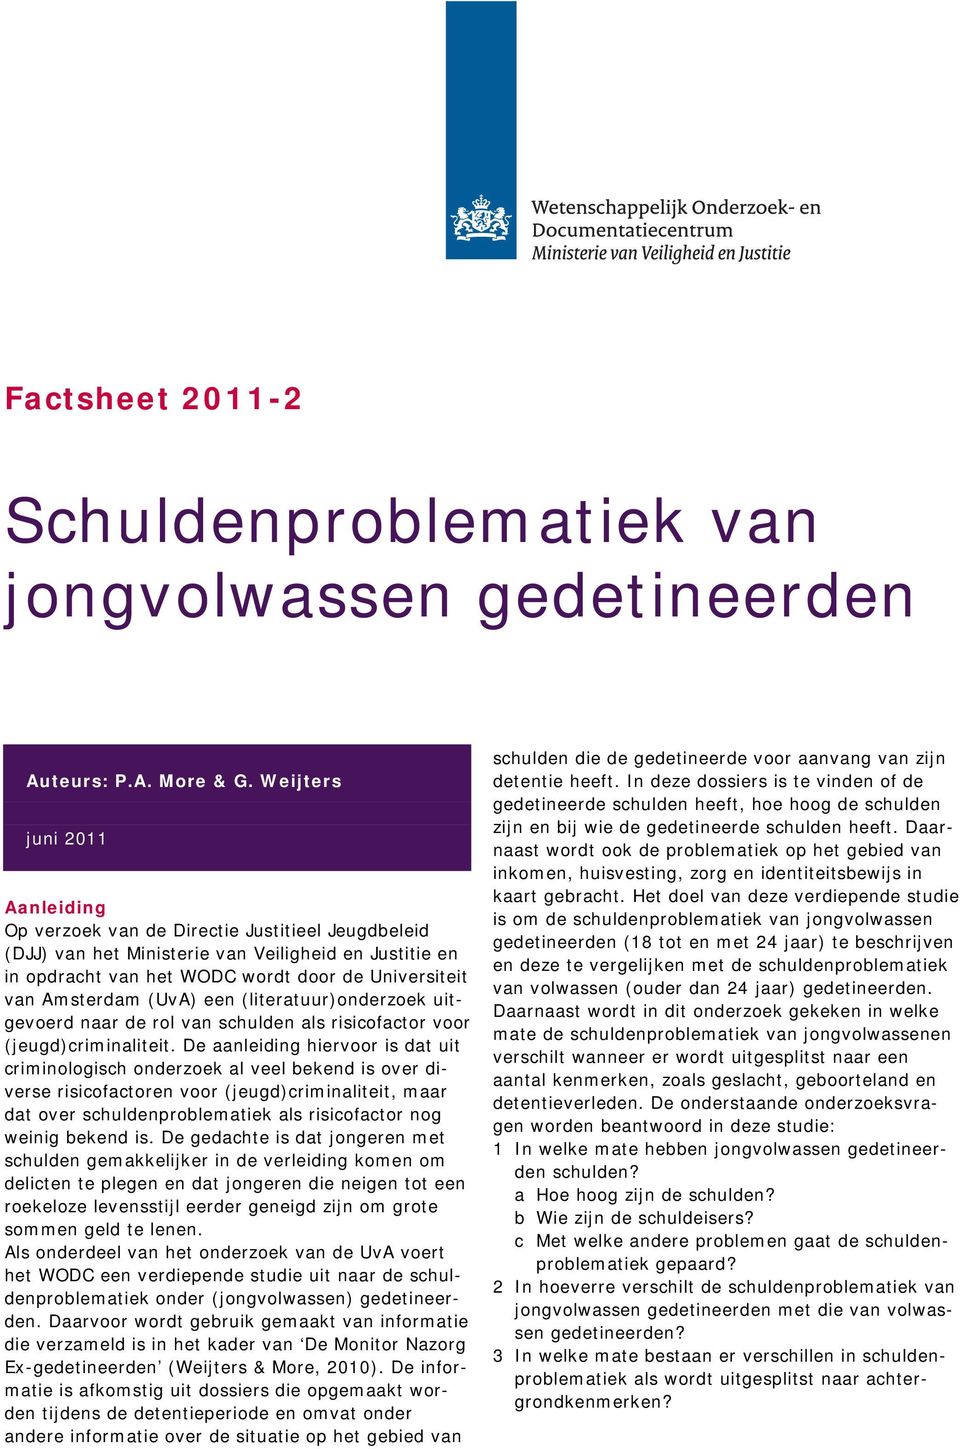 Amsterdam (UvA) een (literatuur)onderzoek uitgevoerd naar de rol van schulden als risicofactor voor (jeugd)criminaliteit.